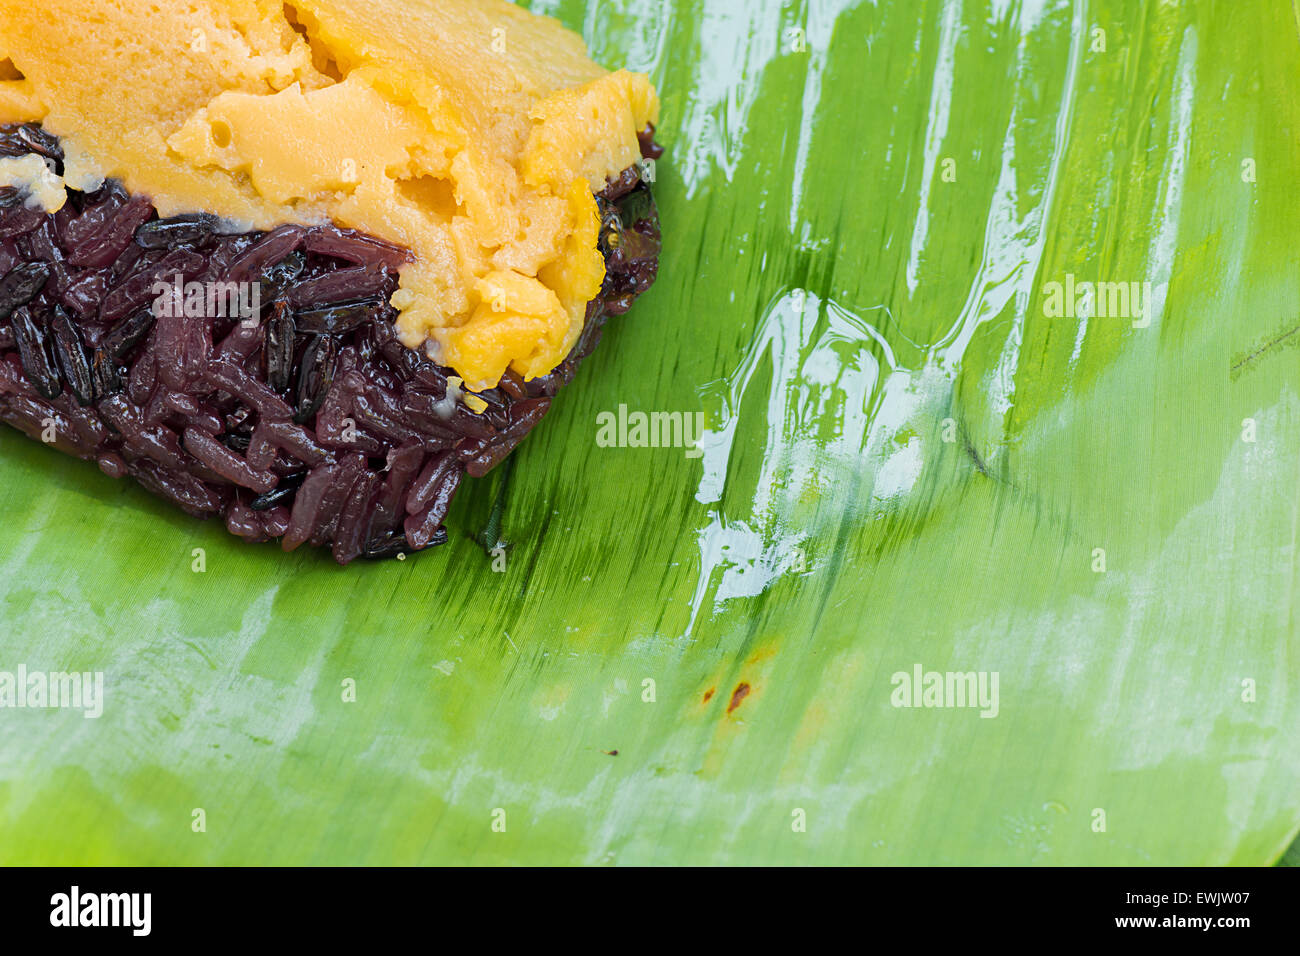 Le riz gluant noir avec de la crème anglaise, enveloppés dans des feuilles de bananier Banque D'Images